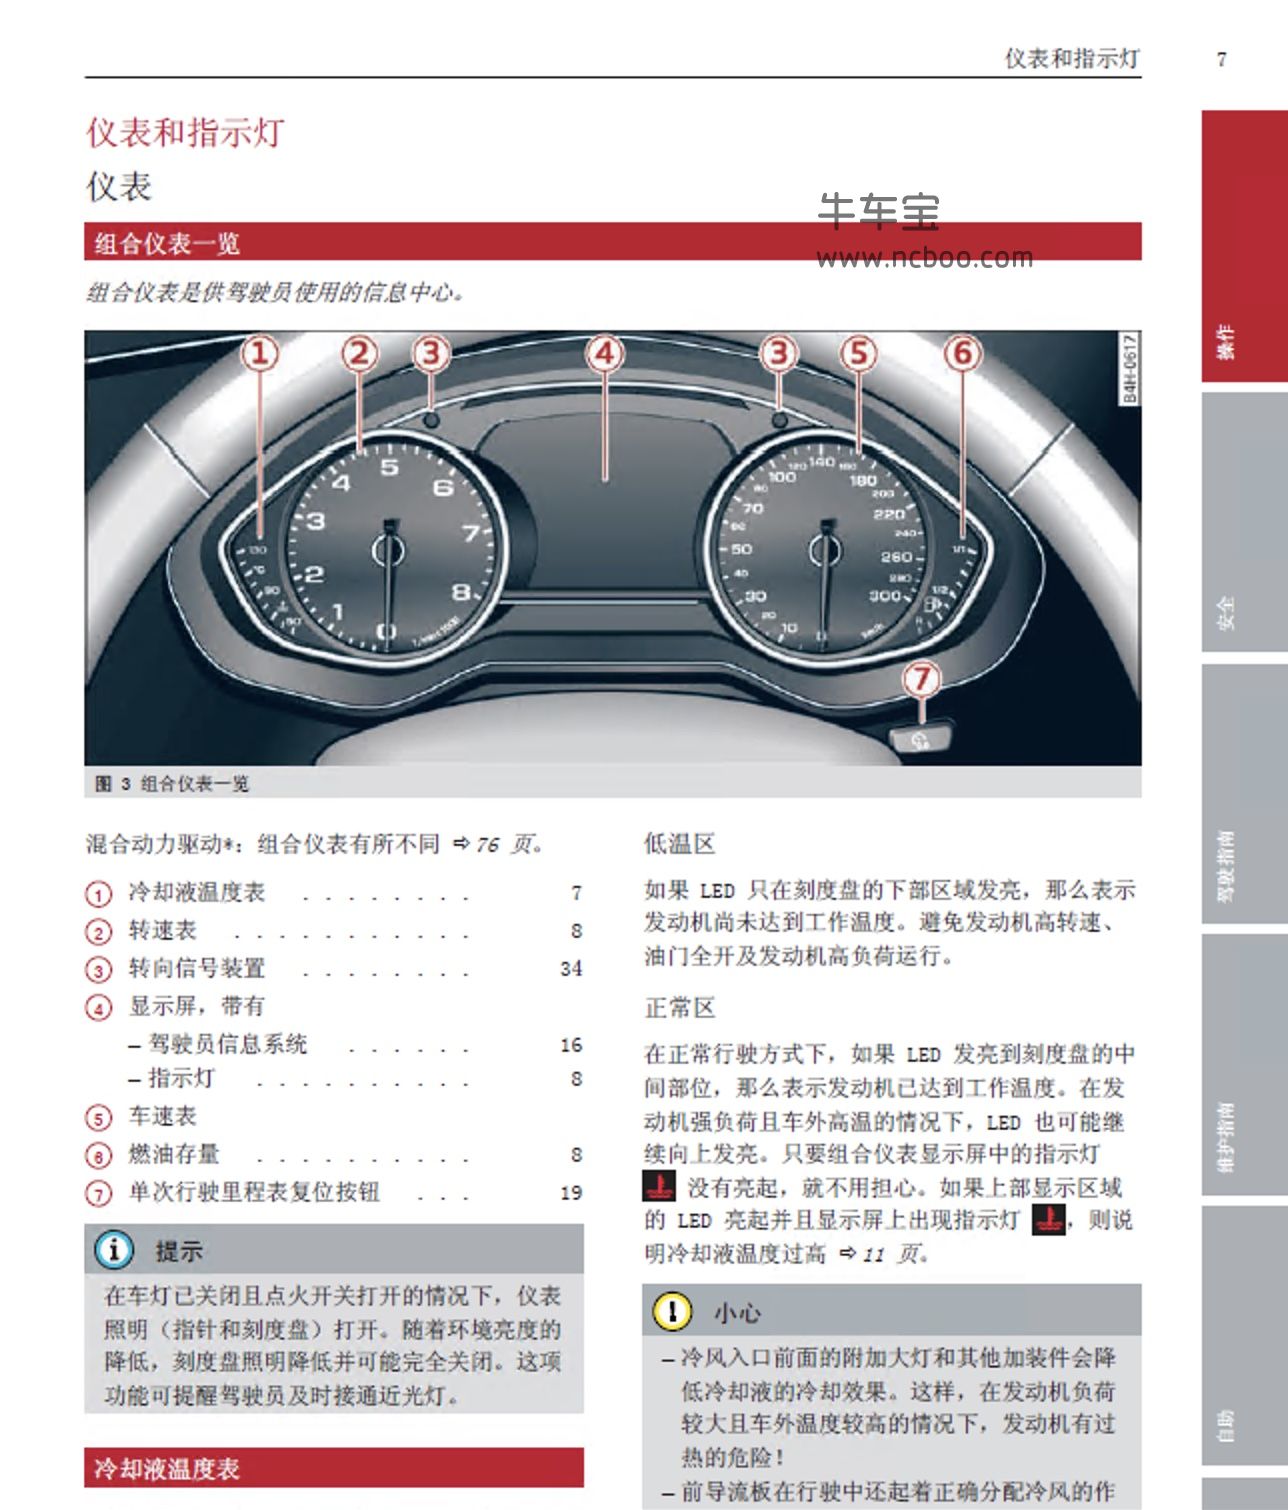 2013年奥迪A8/S8产品使用说明书用户手册电子版下载pdf